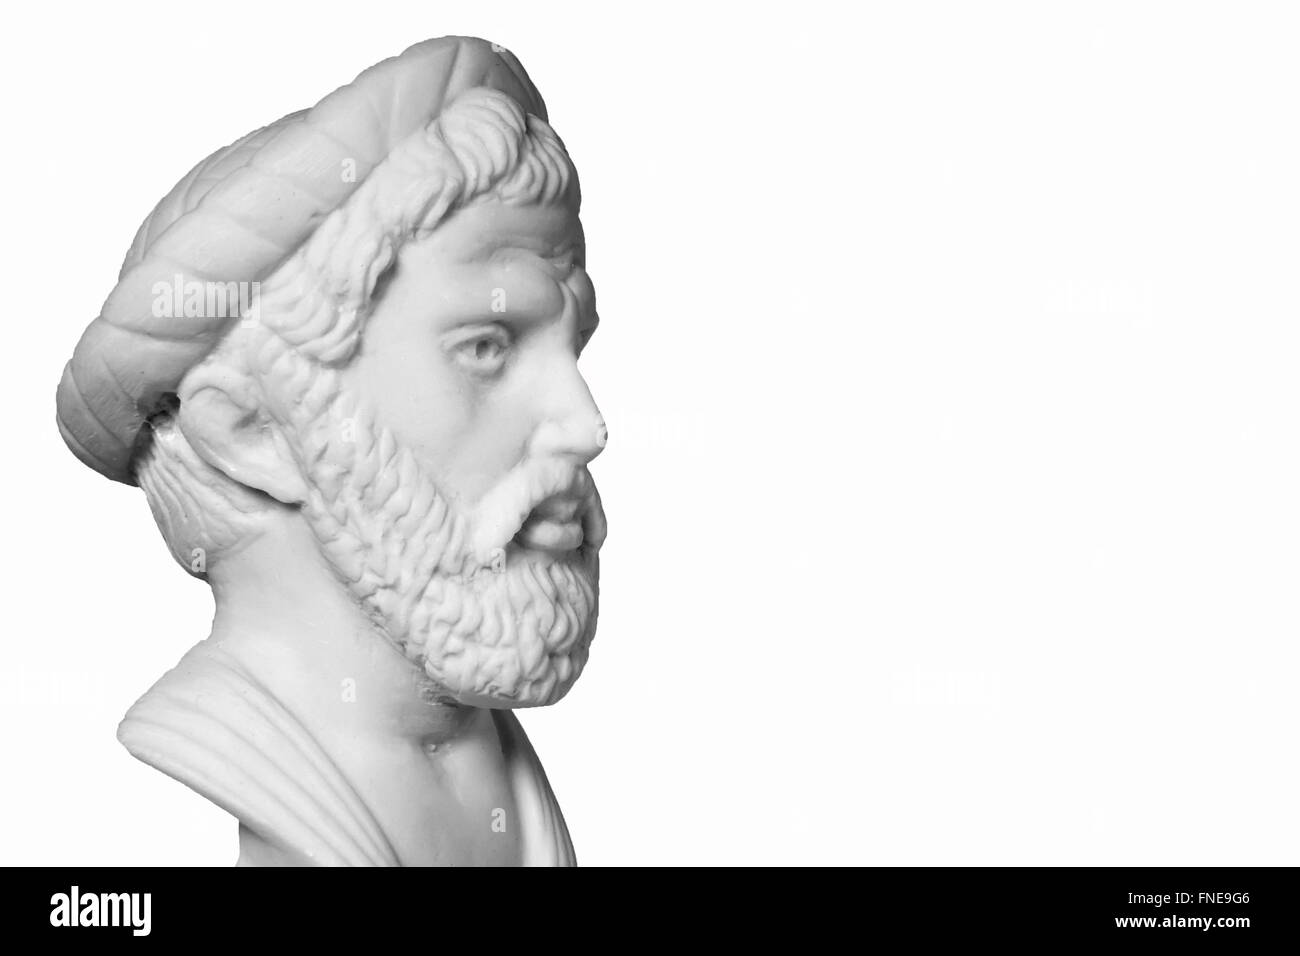 Pythagoras war ein wichtiger griechischer Philosoph, Mathematiker, Geometer und Musik Theoretiker. Weisse Marmorbüste von ihm auf weißen bac Stockfoto